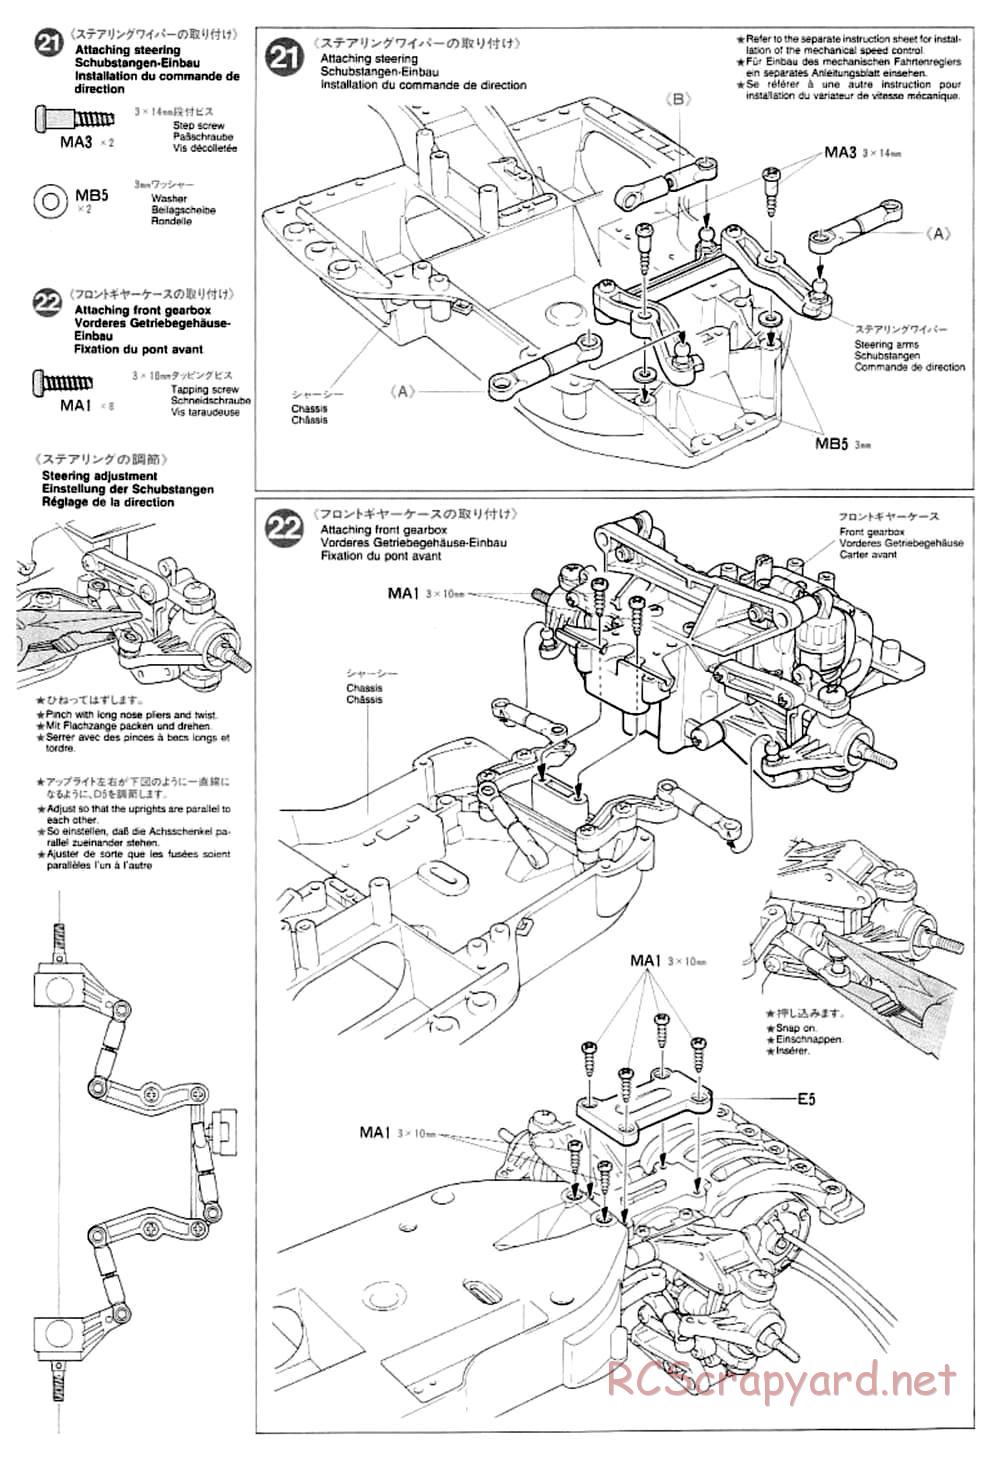 Tamiya - TA-03F Chassis - Manual - Page 12